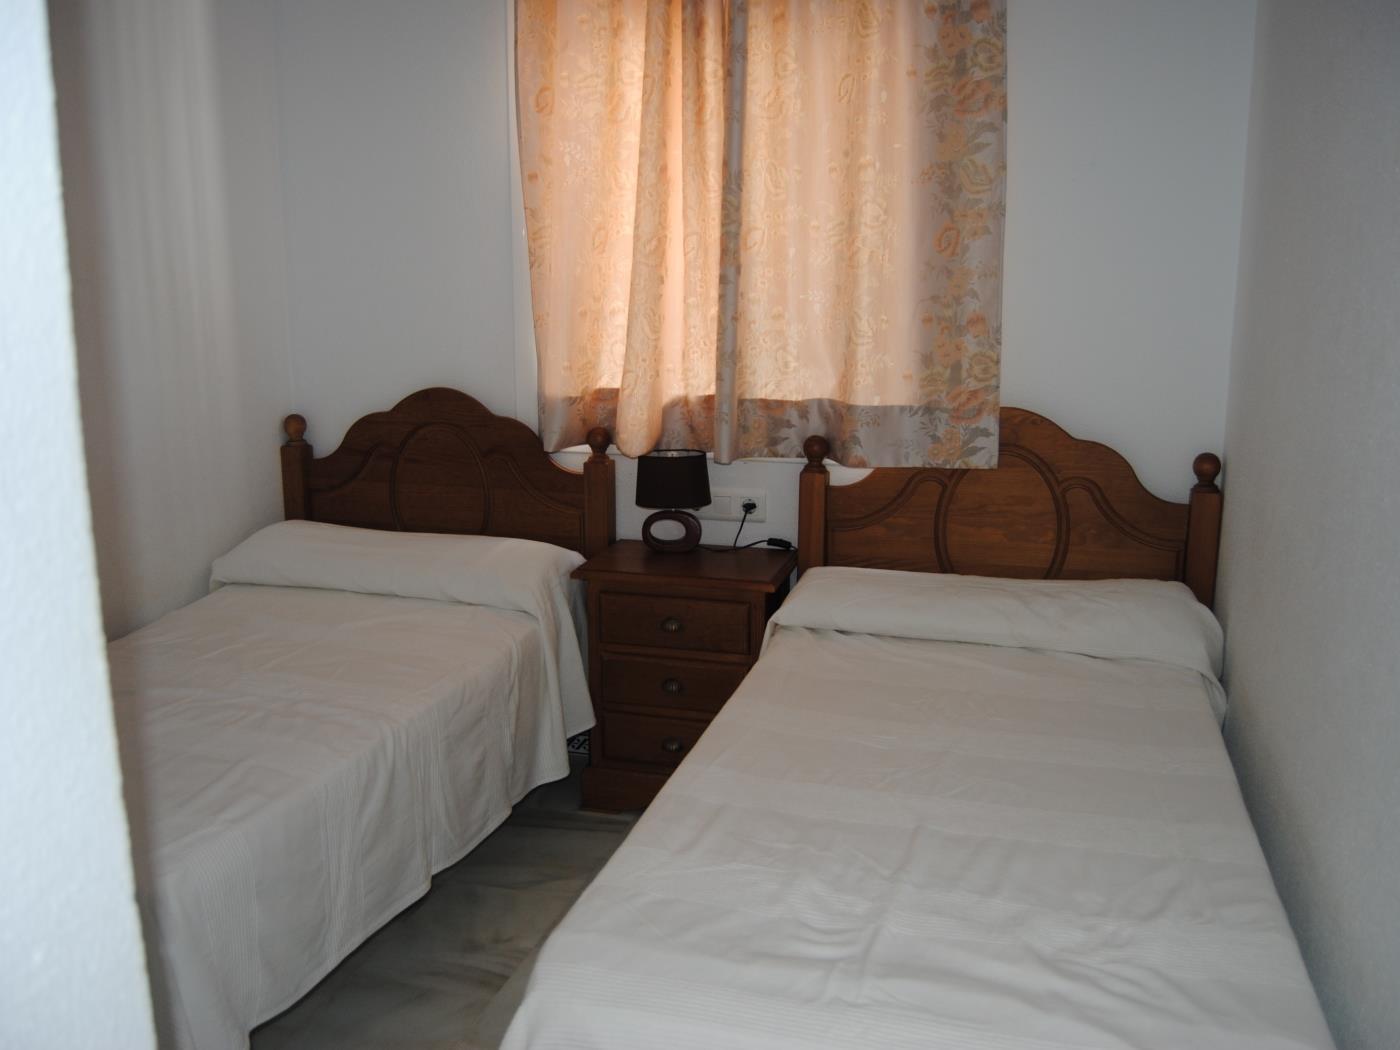 Ref V6. Apartamento de dos dormitorios en planta baja en Chiclana de la Frontera